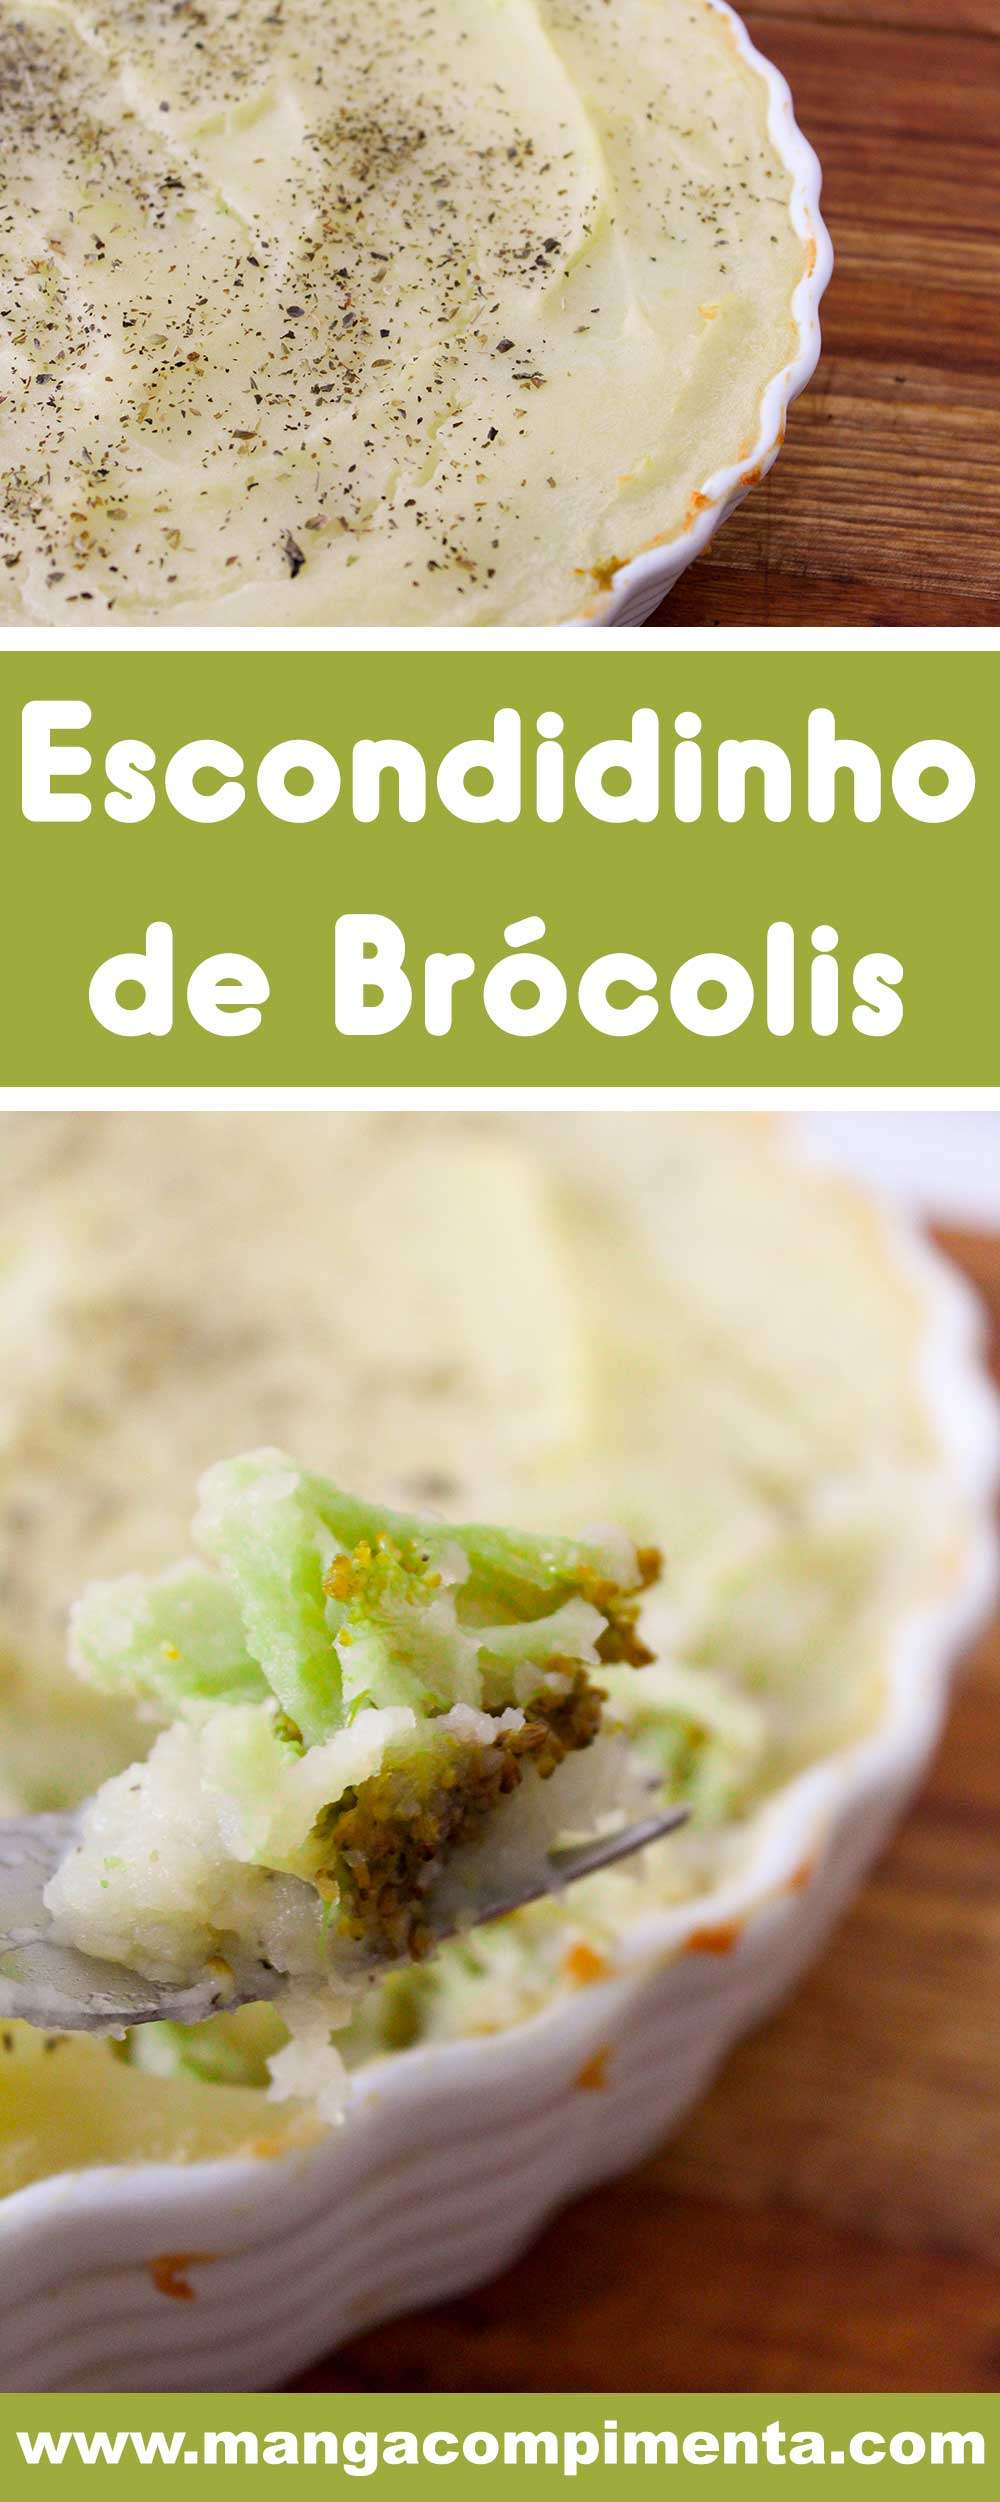 Receita de Escondidinho de Brócolis - prepare esse prato delicioso para o almoço da semana.